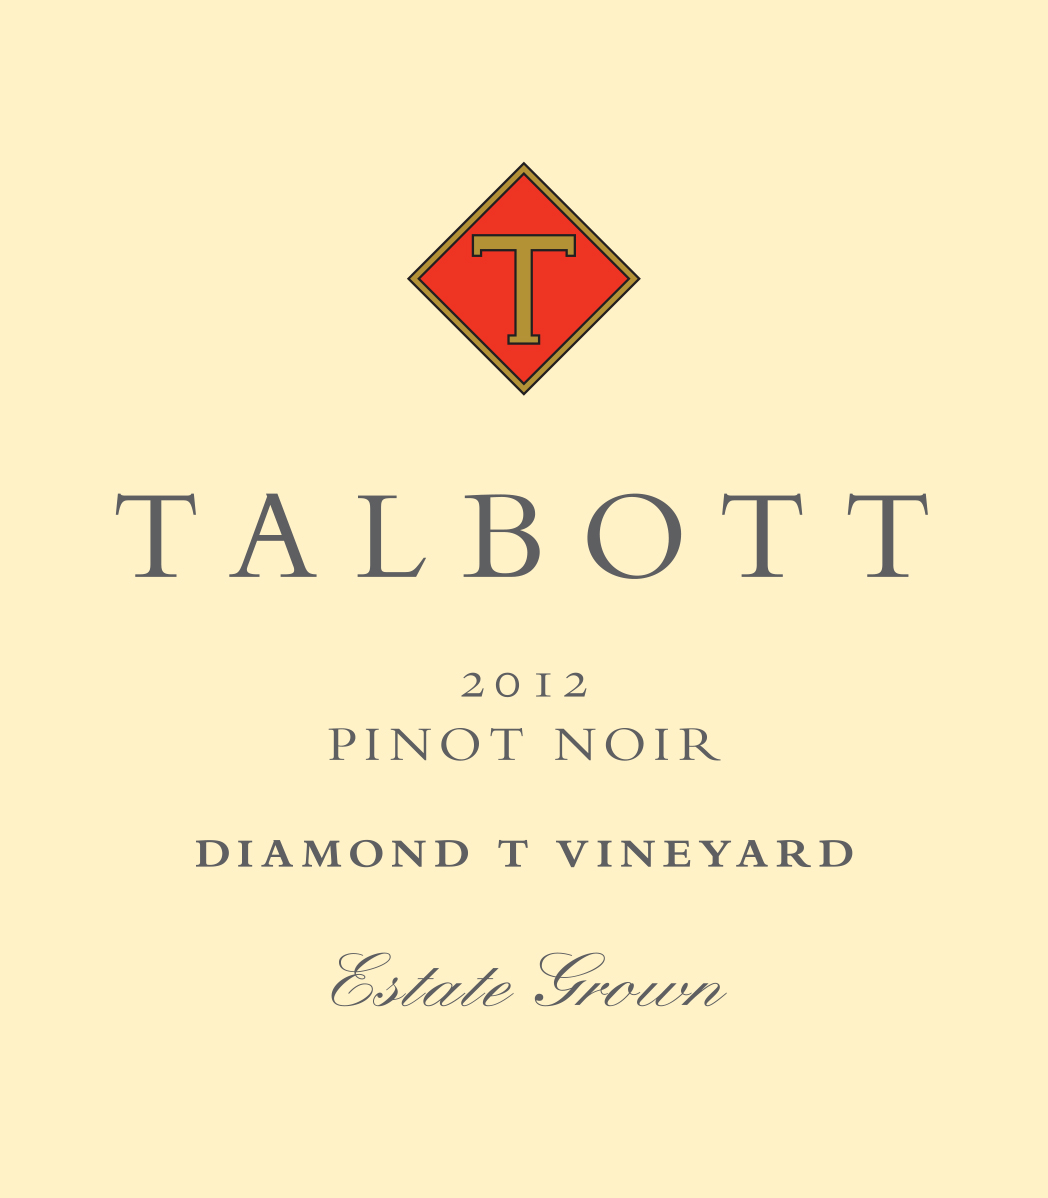 2012 Talbott Chardonnay Diamond T Monterey - click image for full description